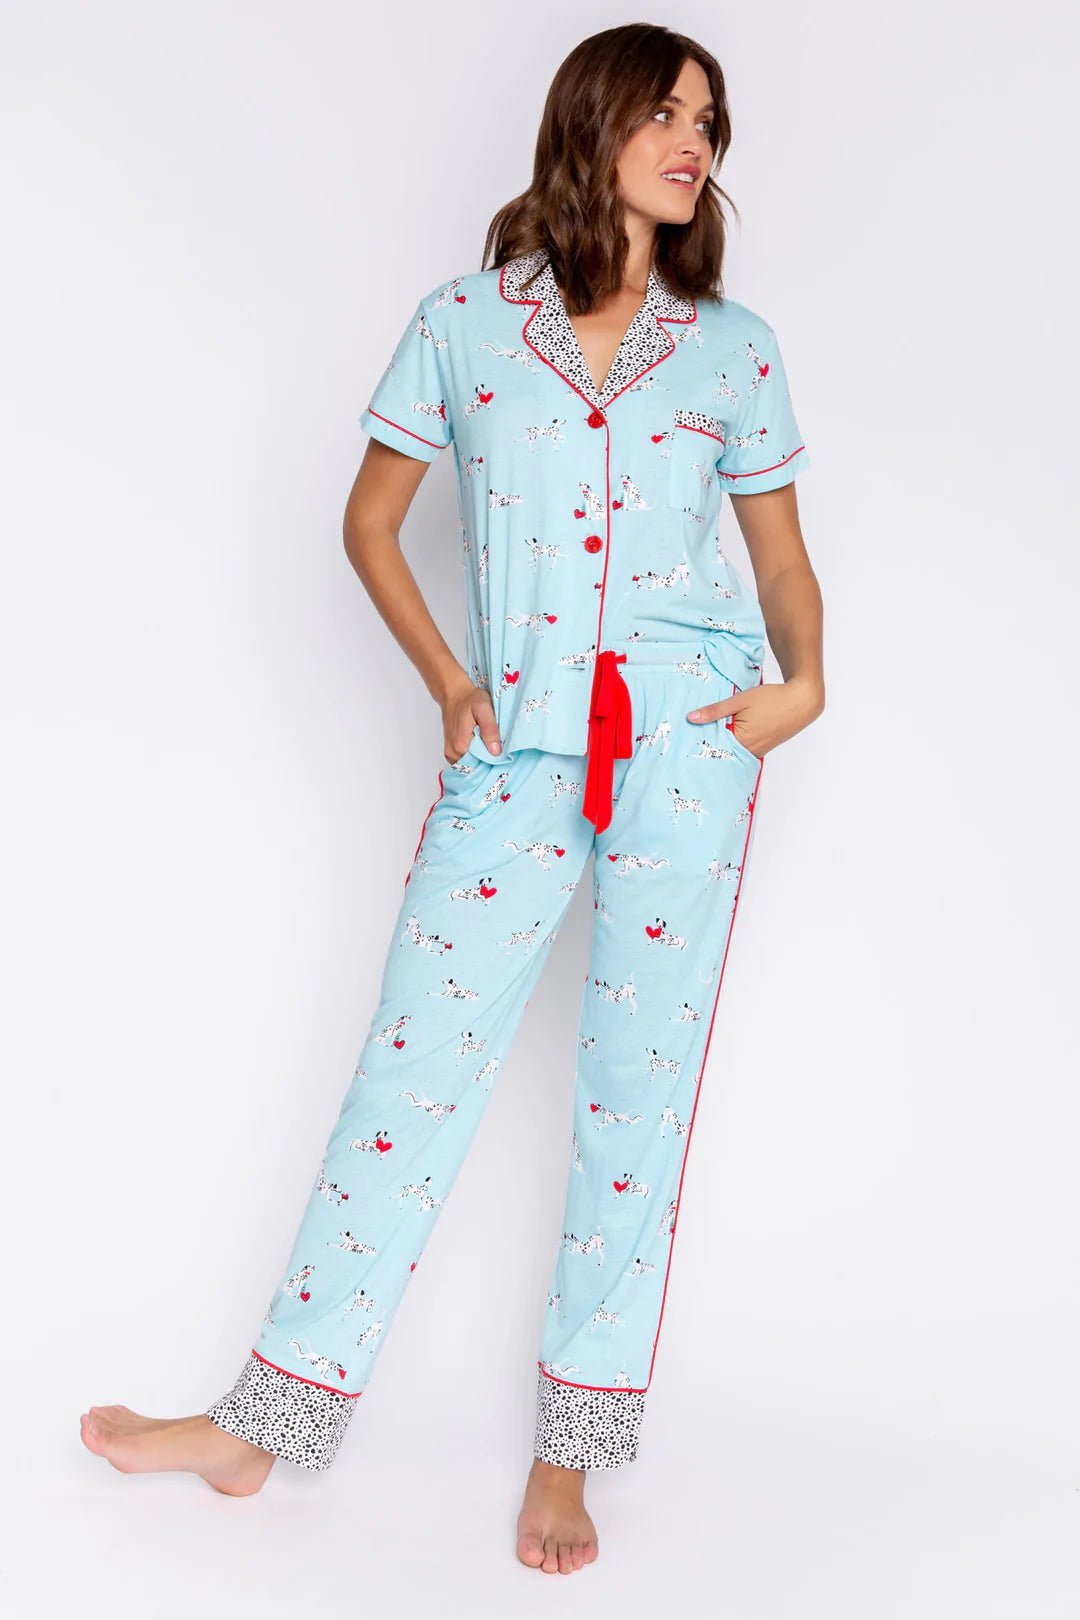 Shop PJ Salvage Puppy Love PJ Set - Premium Pyjamas from PJ Salvage Online now at Spoiled Brat 